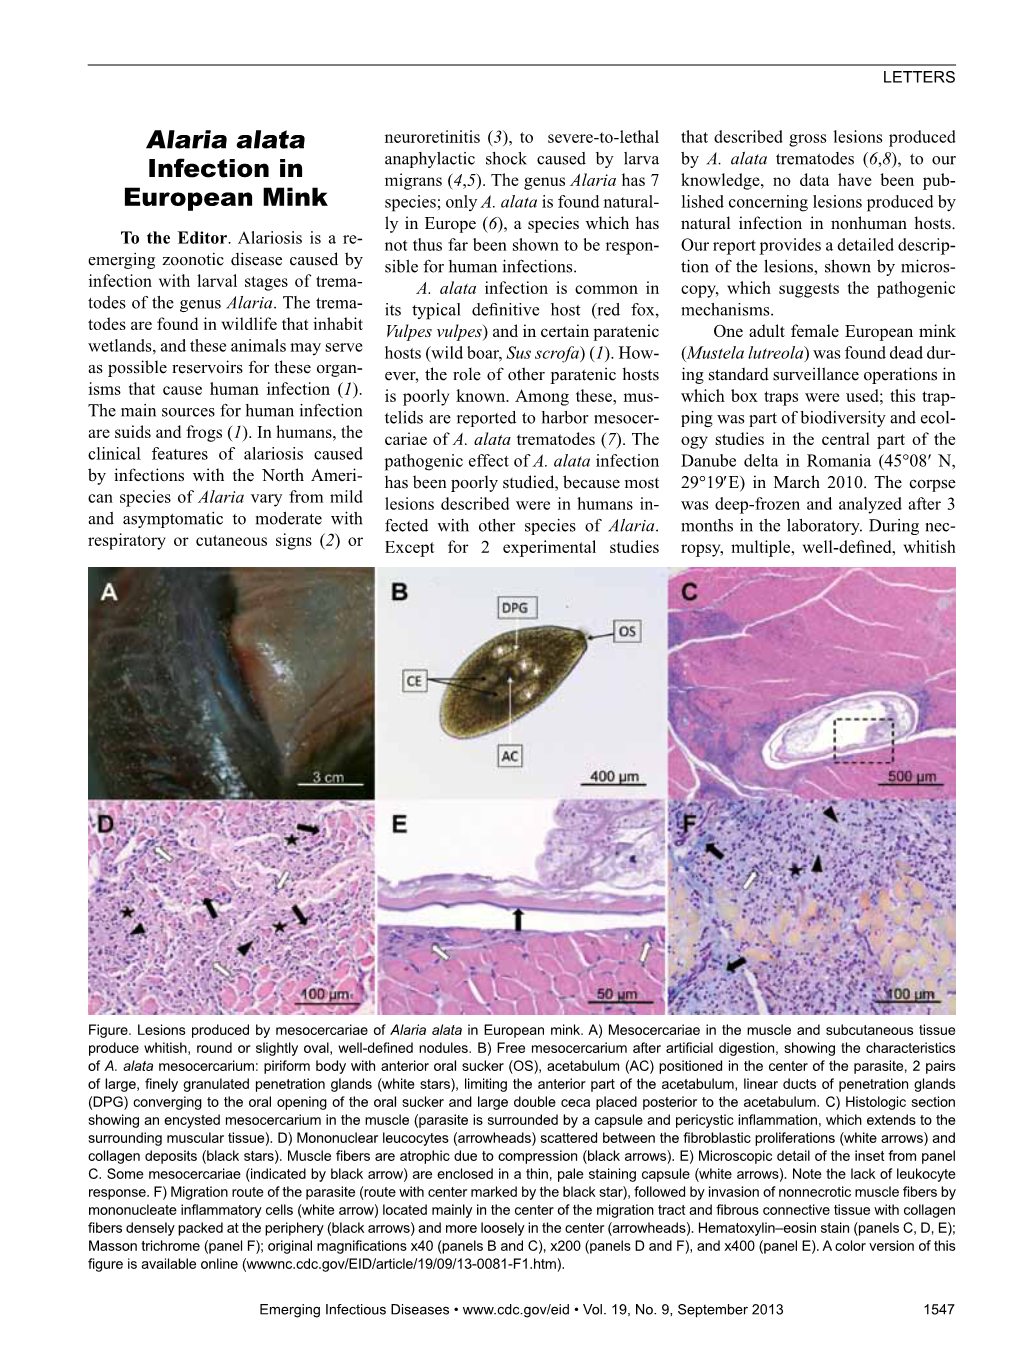 Alaria Alata Infection in European Mink